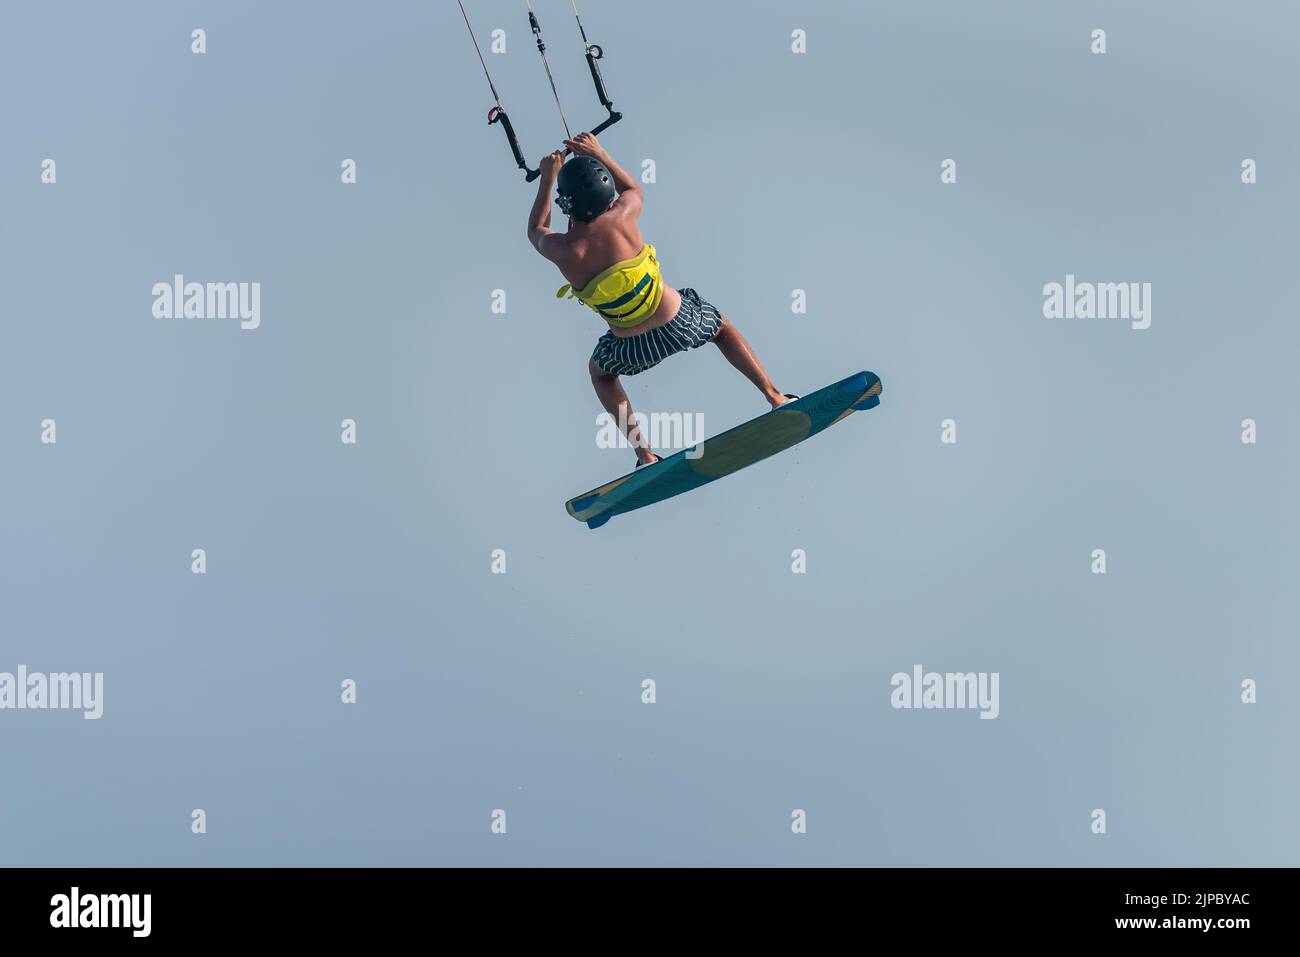 Kiteboarding progression, Homme apprenant des sauts de base kitesurf, , surf, kite surf. Saut en cerf-volant, saut en garçon Banque D'Images